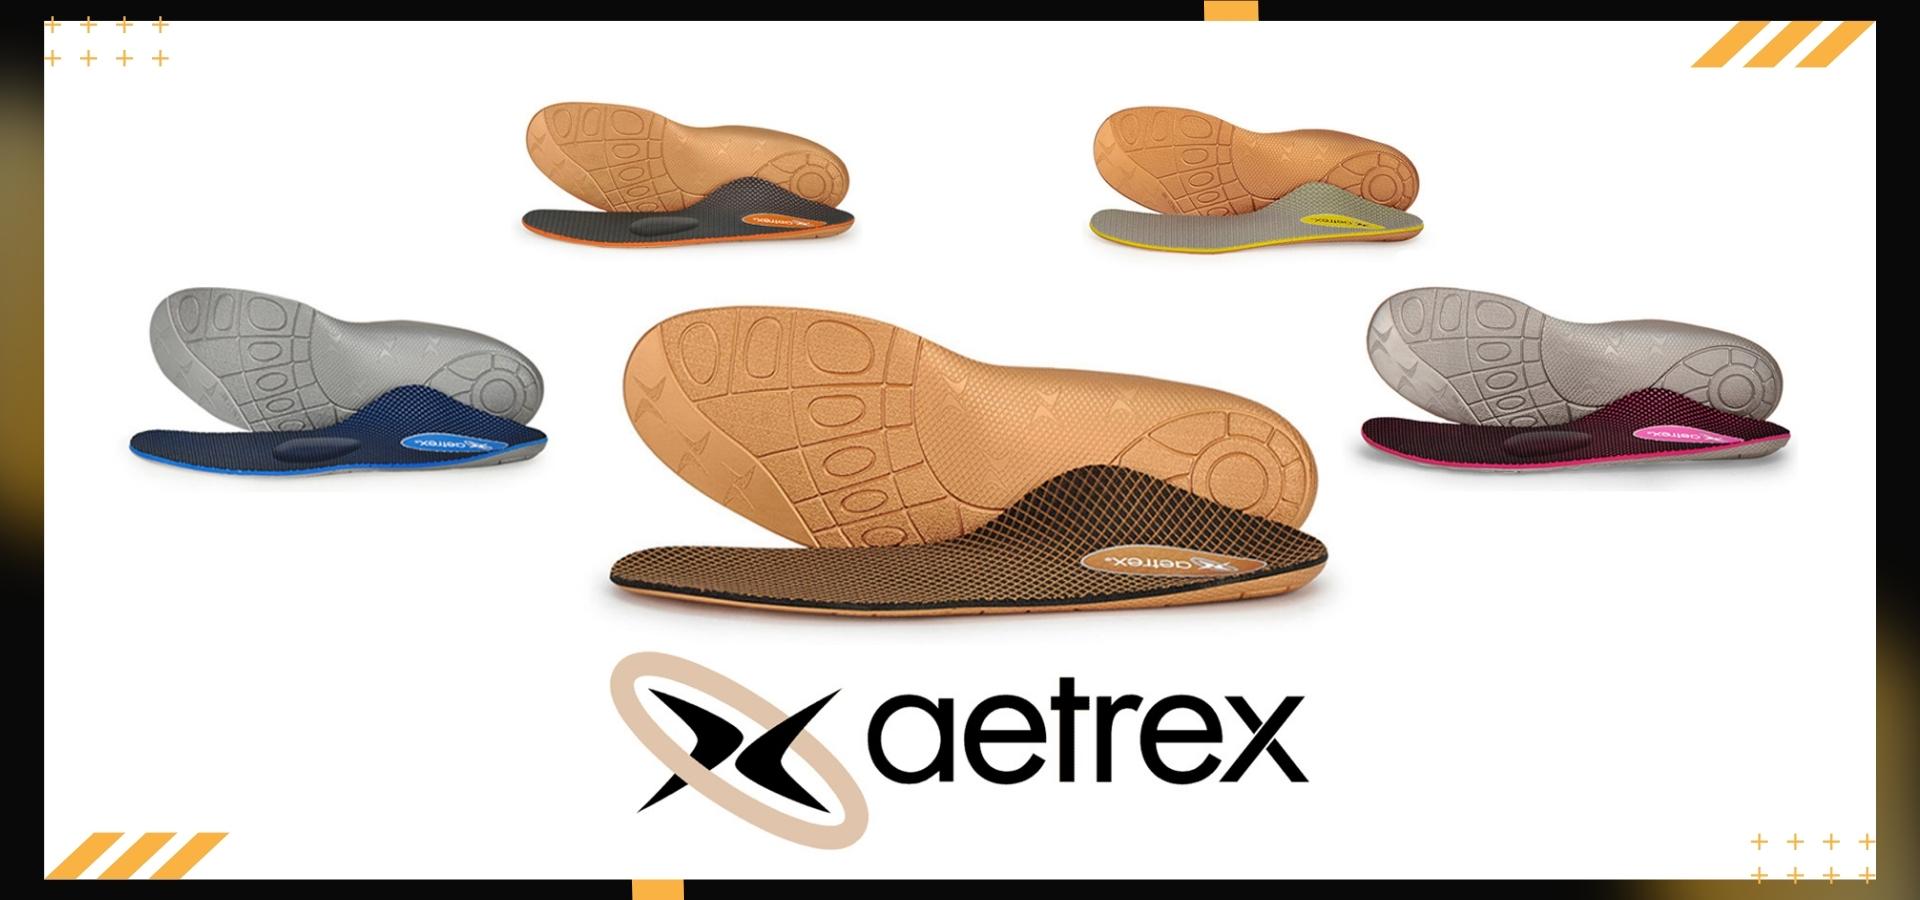 AETREX Premium Orthotics